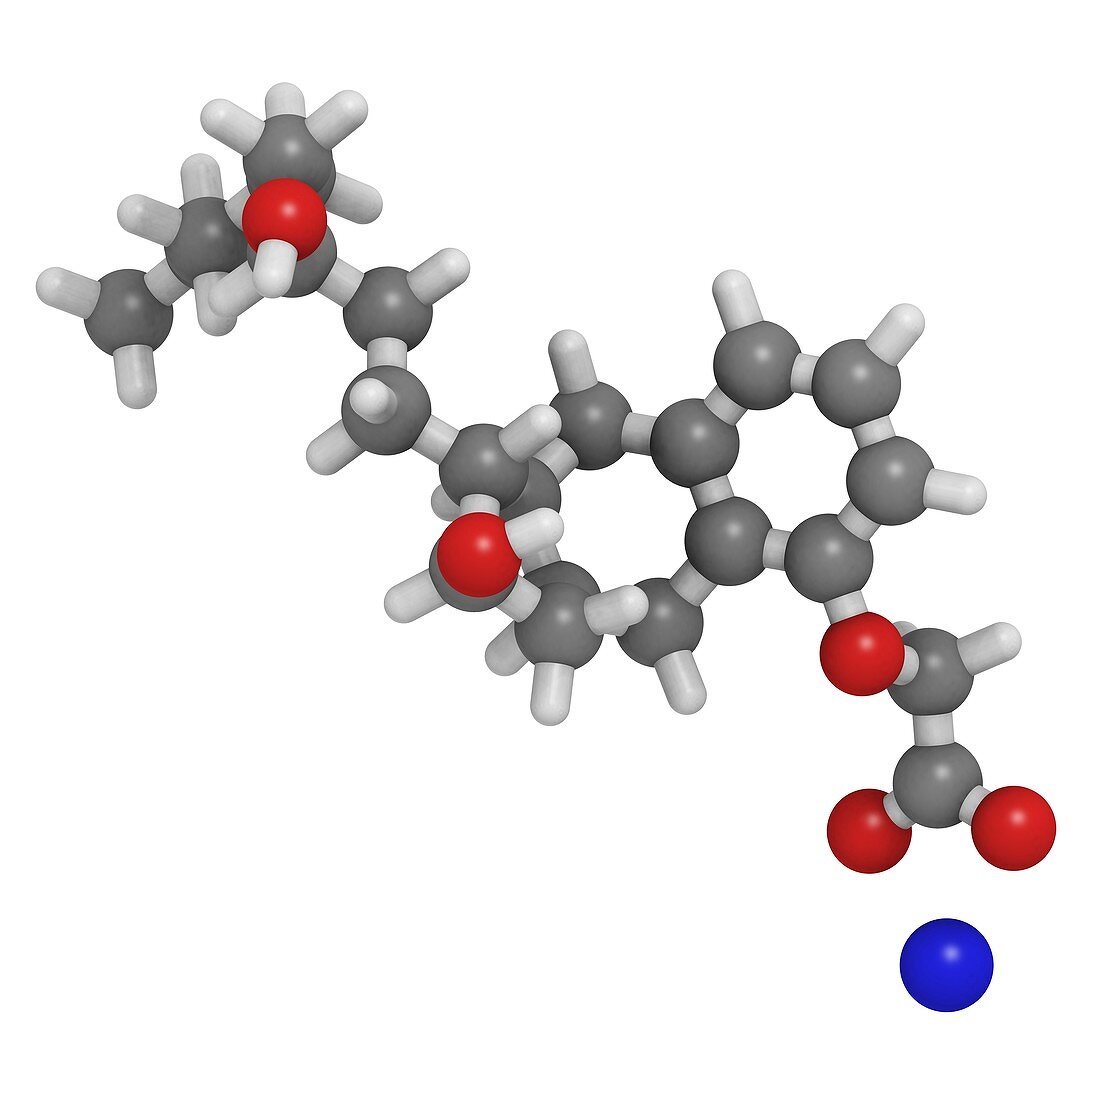 Treprostinil drug,molecular model